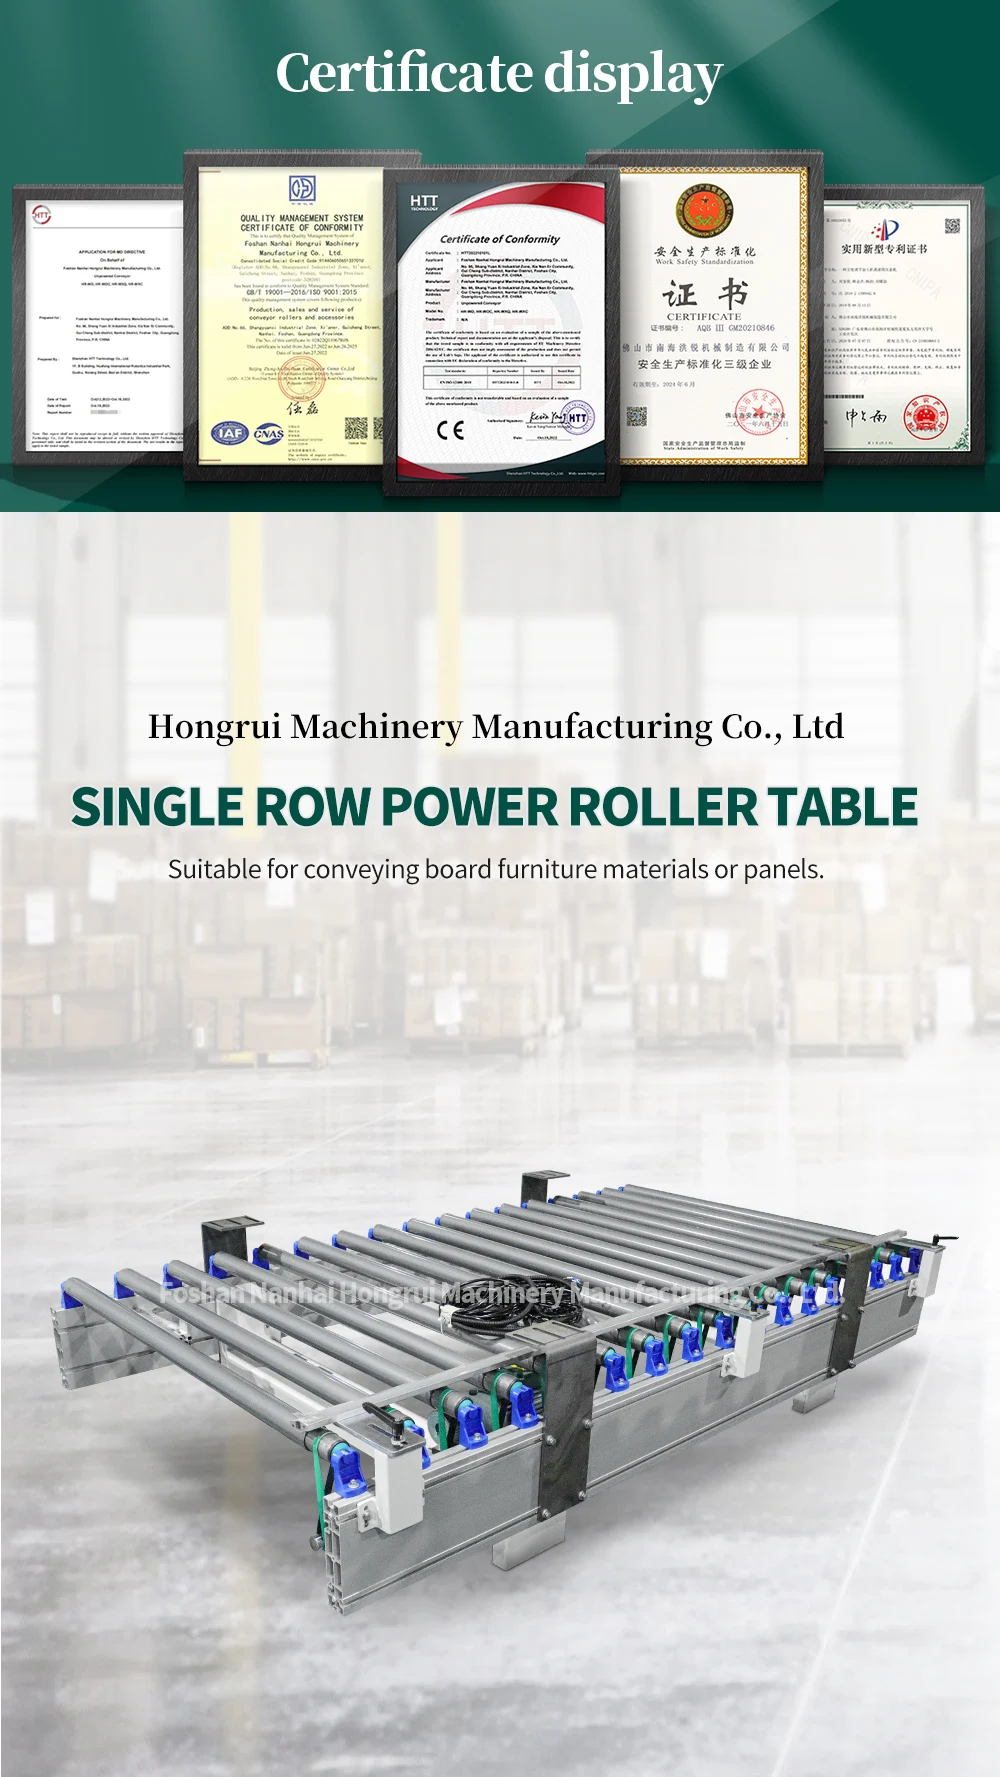 Hongrui can customize a single row power roller conveyor factory